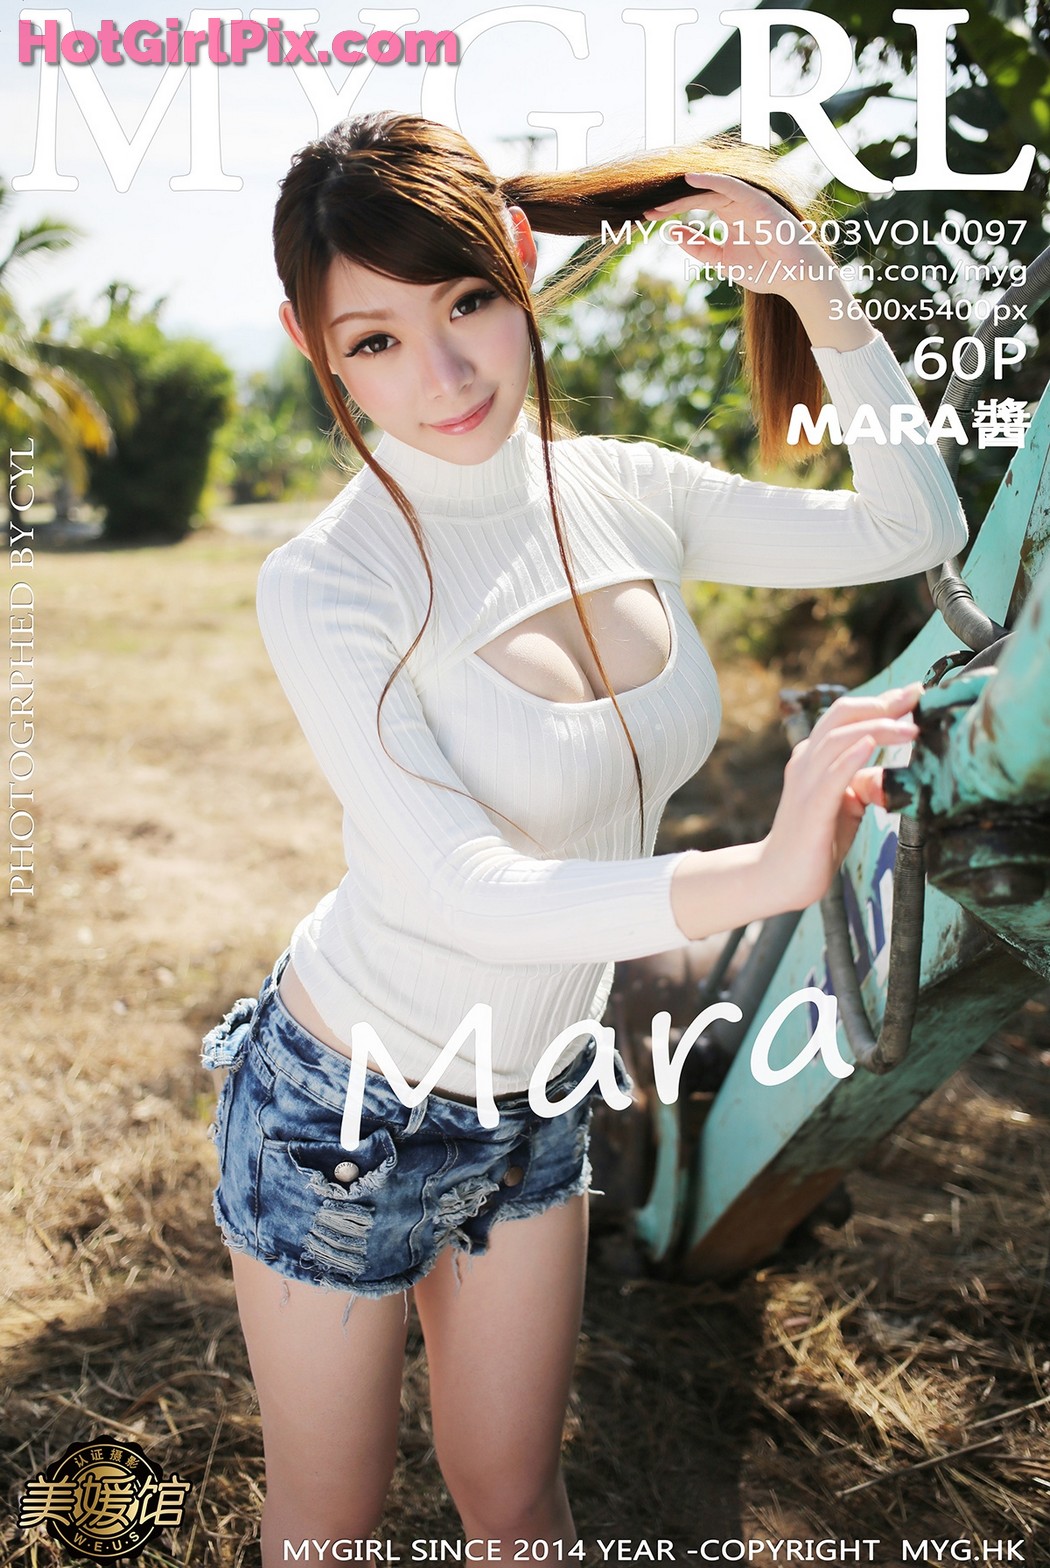 [MyGirl] Vol.097 MARA醬 Jiang Cover Photo